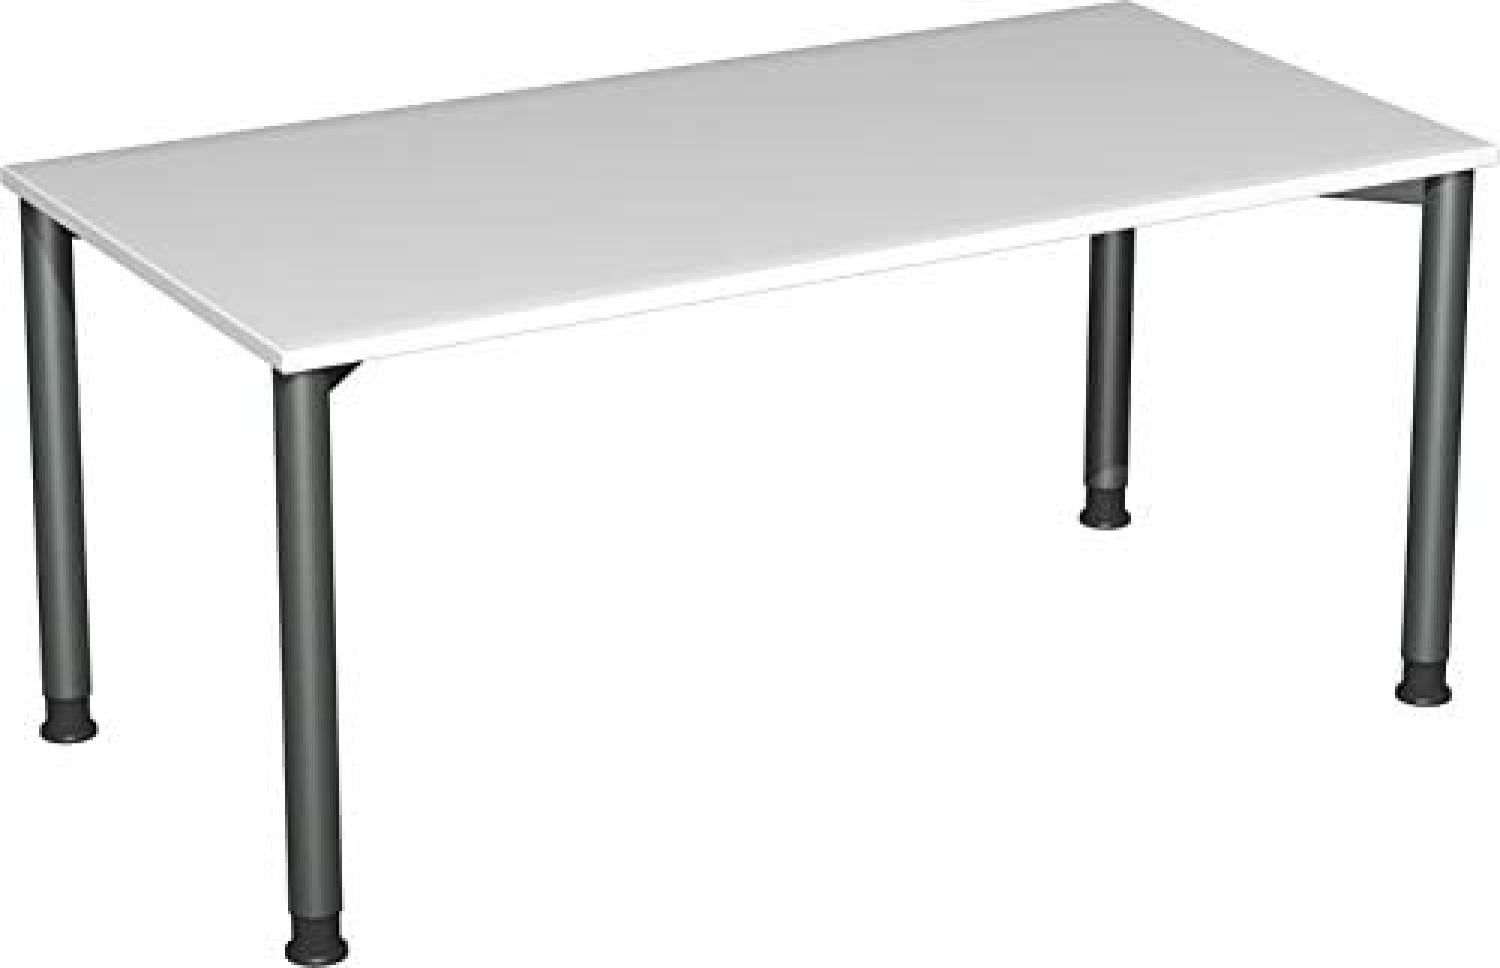 '4-Fuß Flex' Schreibtisch, höhenverstellbar, lichtgrau/ Anthrazit, 68-80 x 160 x 80 cm Bild 1